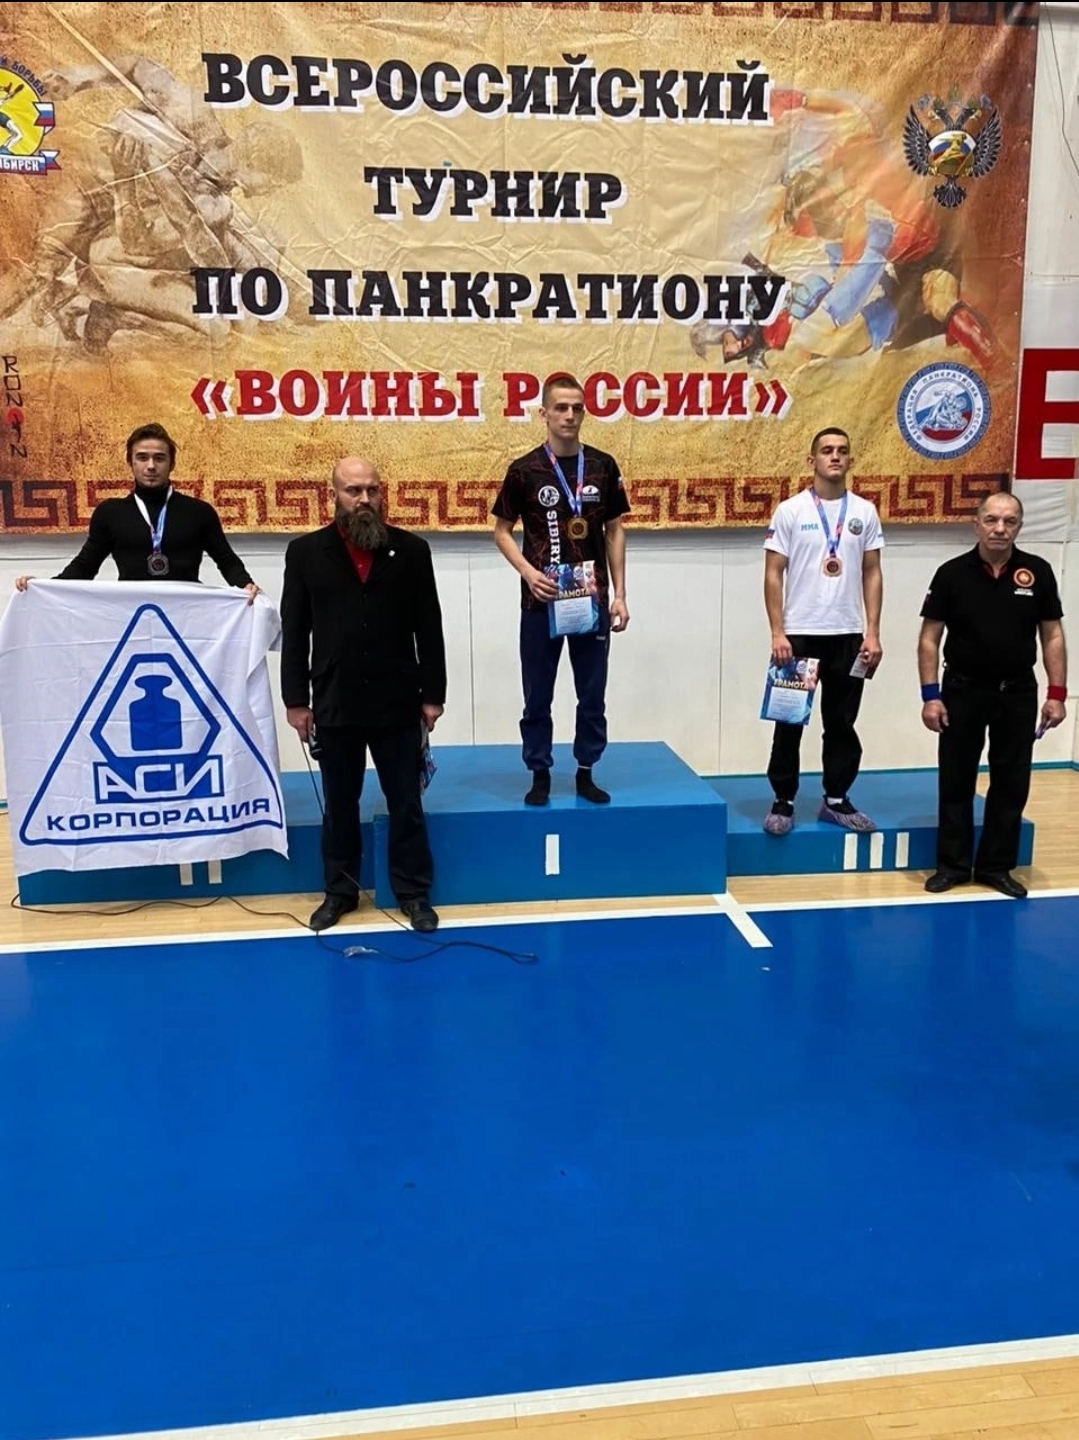 Всероссийский турнир в Новосибирске